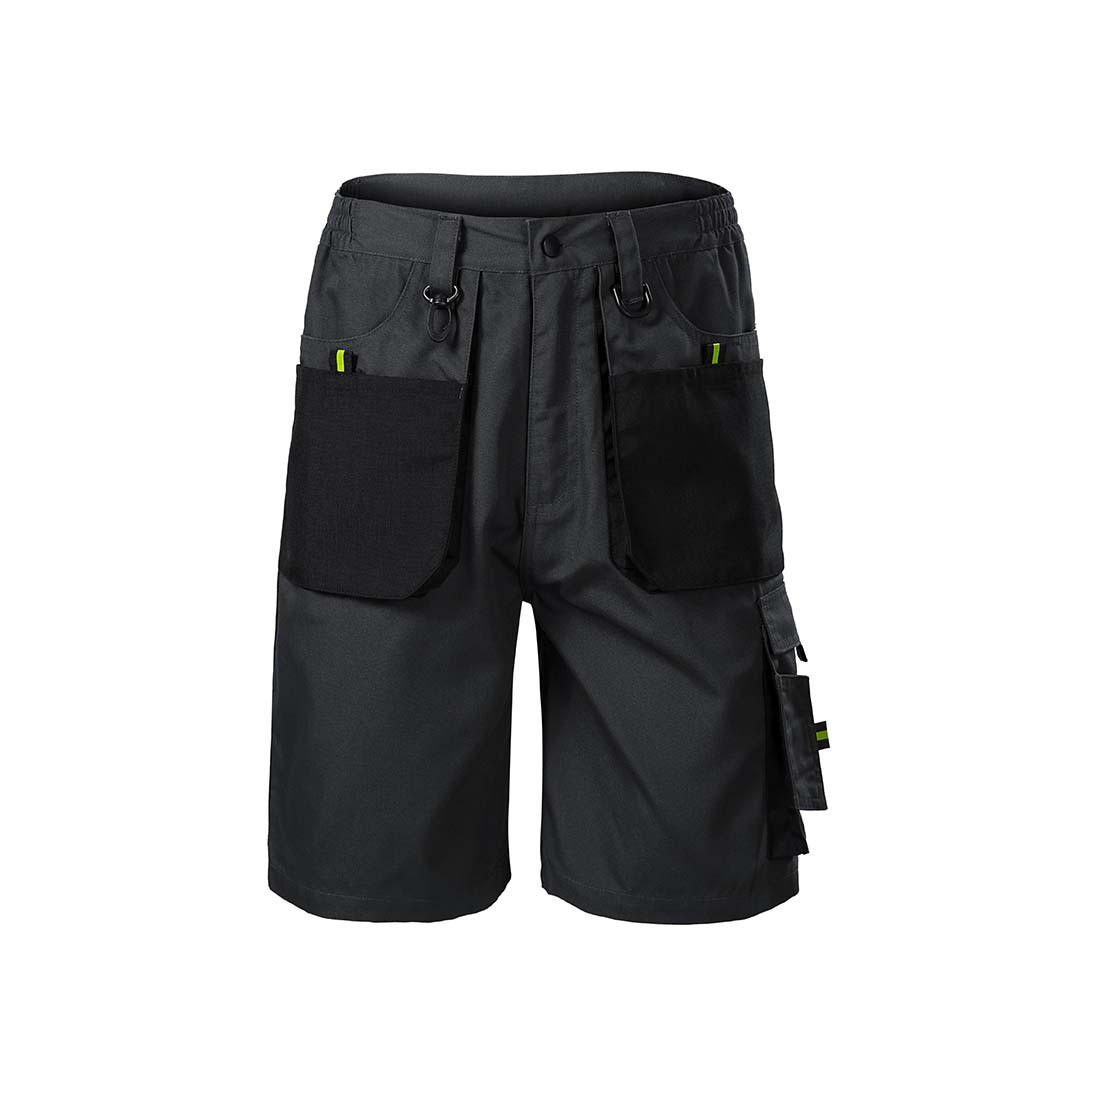 Pantalones cortos de trabajo RANGER para hombres - Ropa de protección